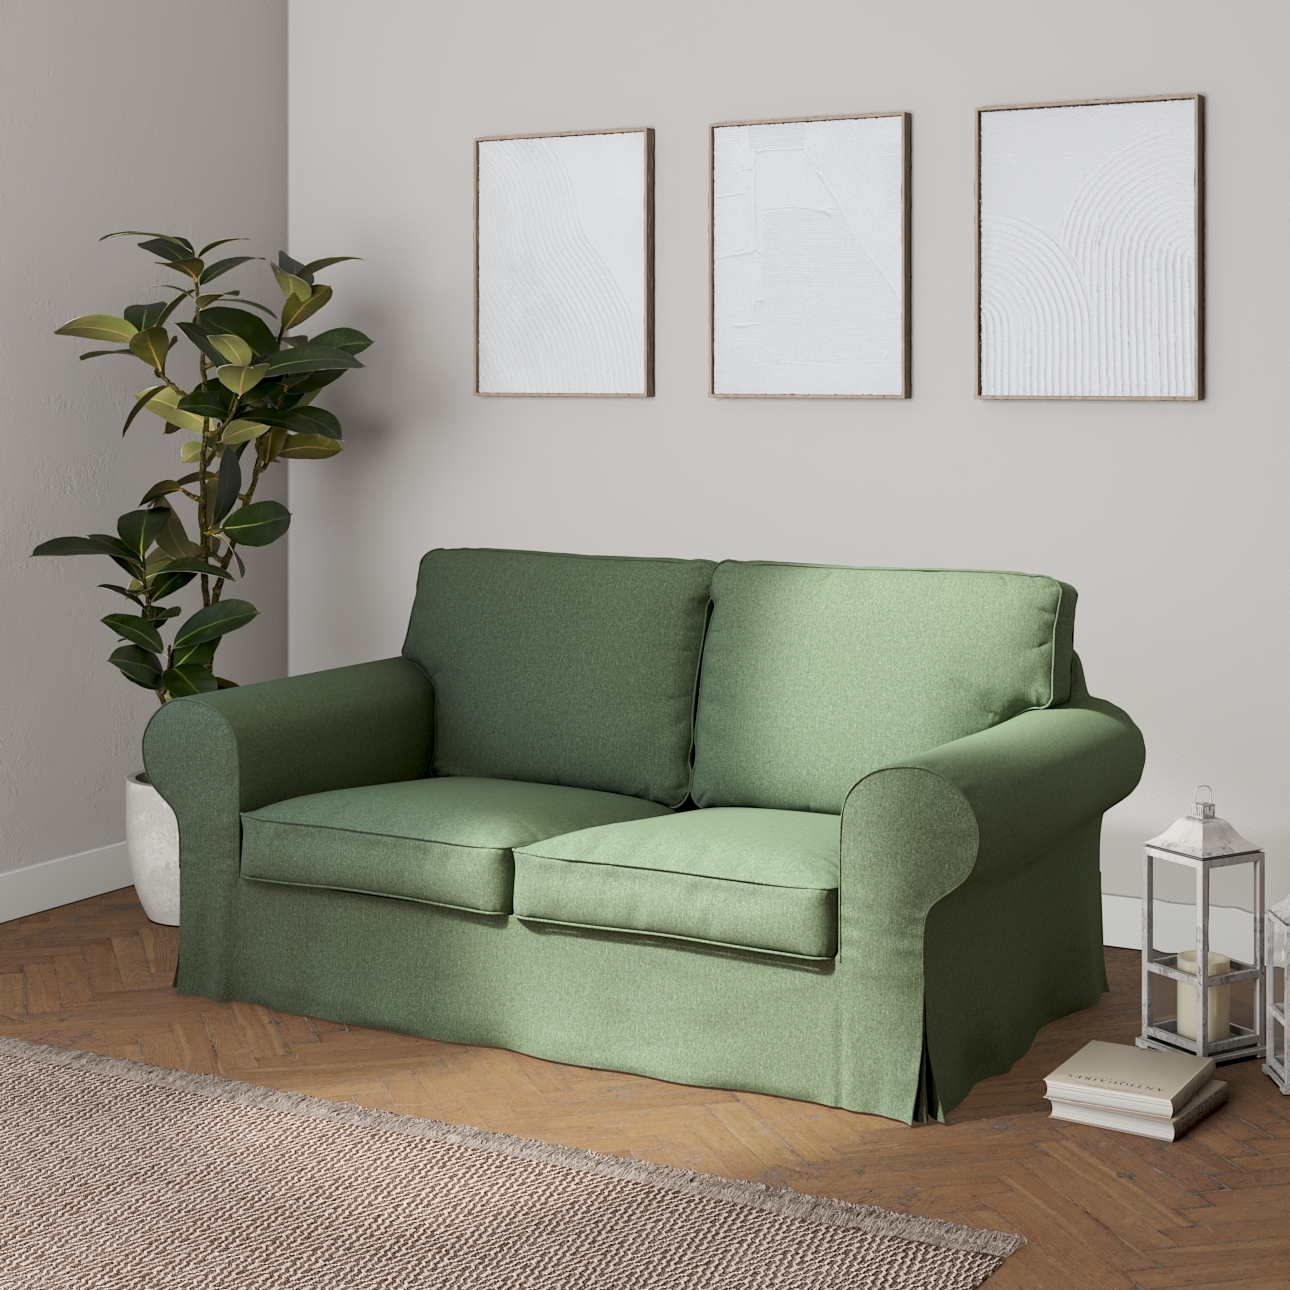 Bezug für Ektorp 2-Sitzer Schlafsofa NEUES Modell, grün, Sofabezug für  Ekt günstig online kaufen